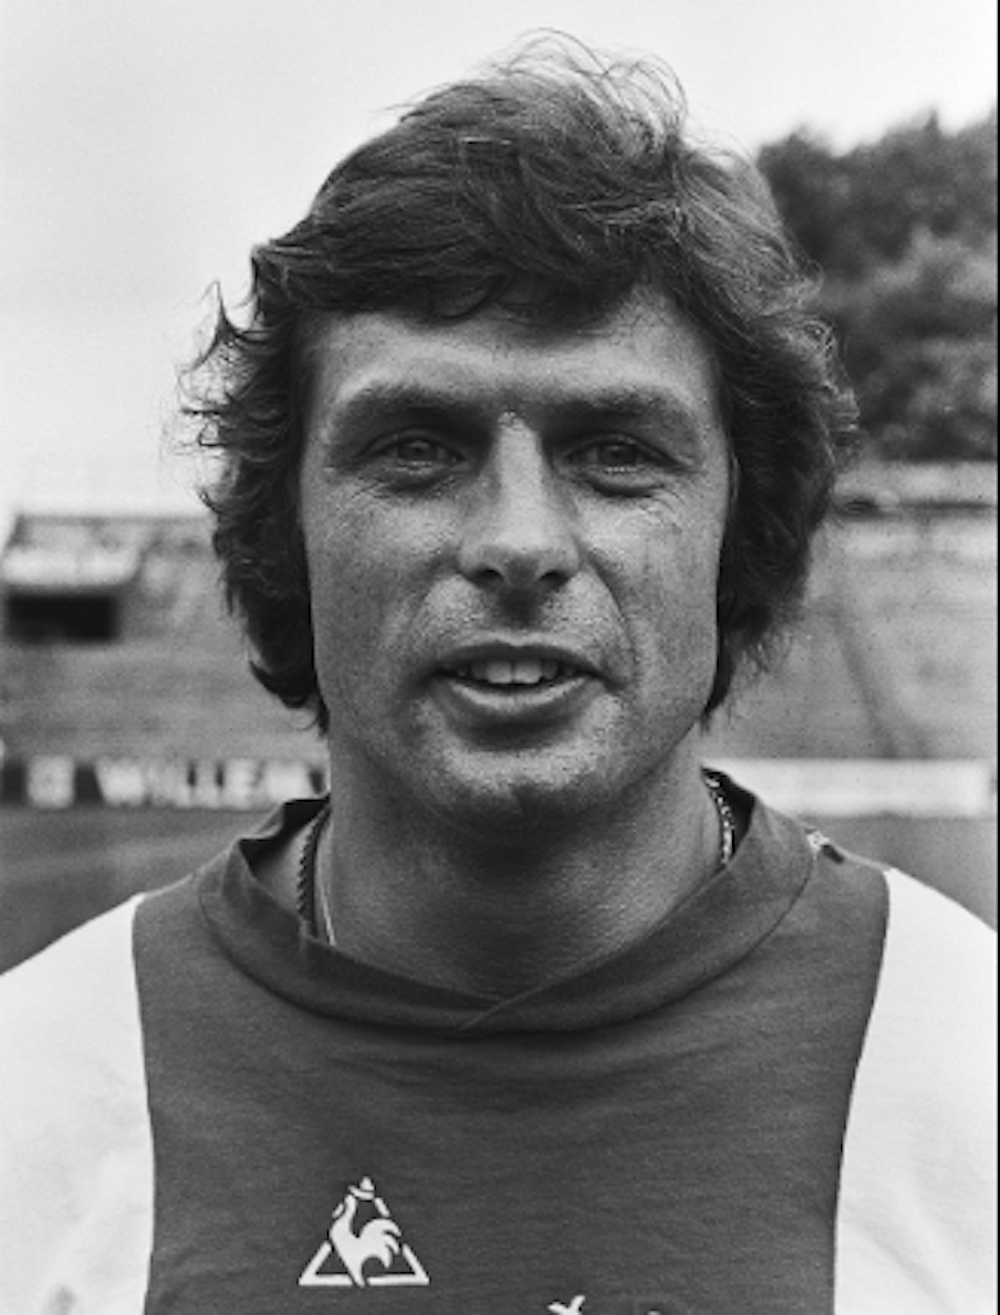 Suurbier faisait partie du grand Ajax qui a dominé l'Europe dans les années 70.